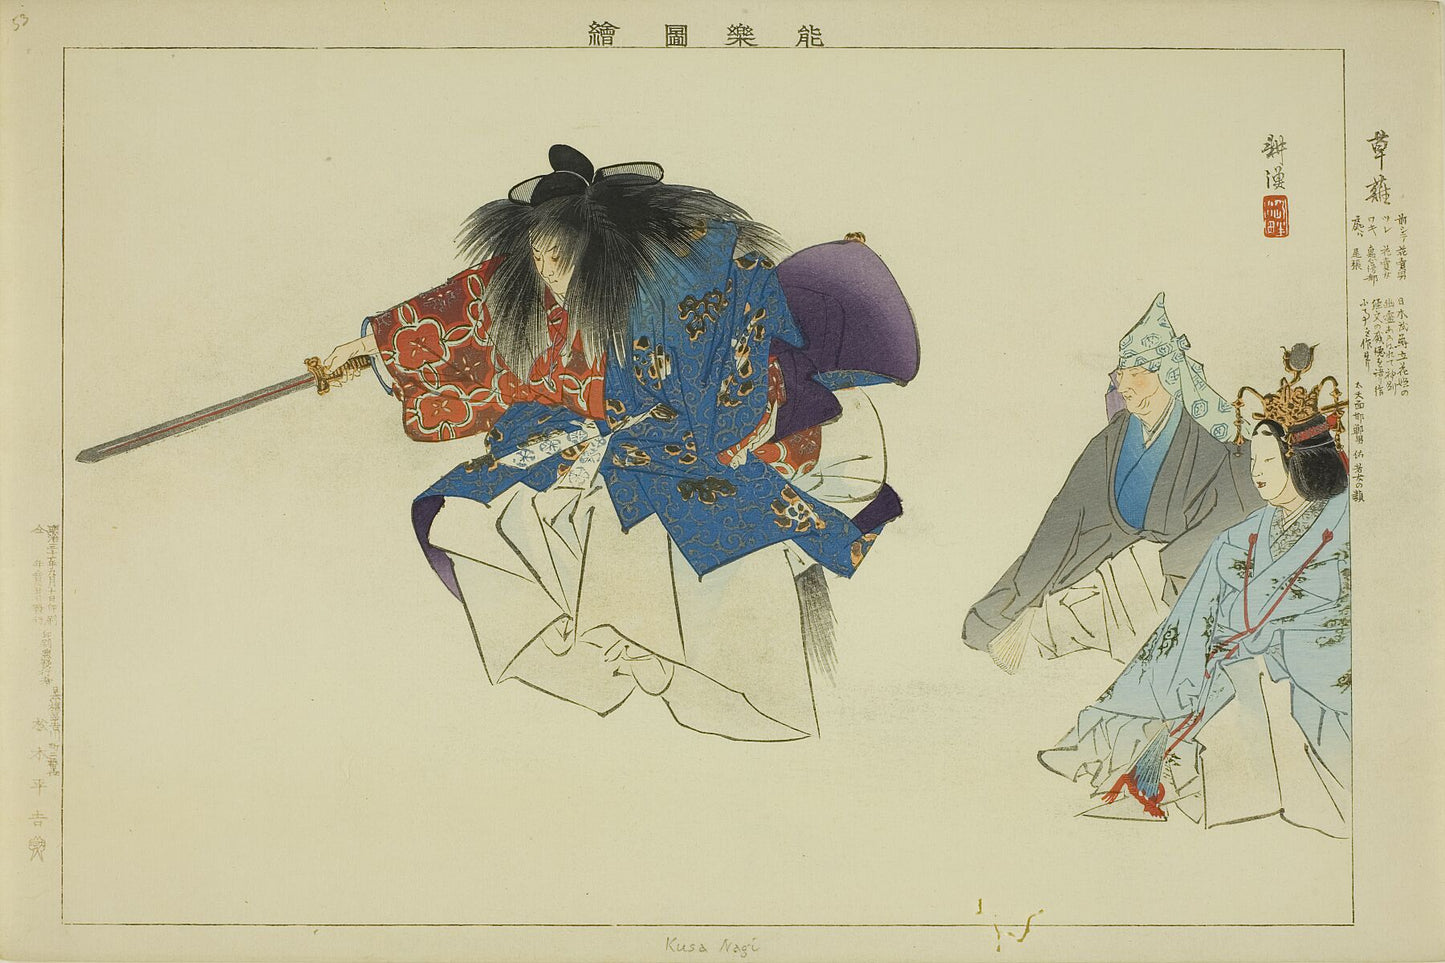 Kusa Nagi, from the series “Pictures of No Performances (Nogaku Zue)” Date- 1898 Artist- Tsukioka Kogyo